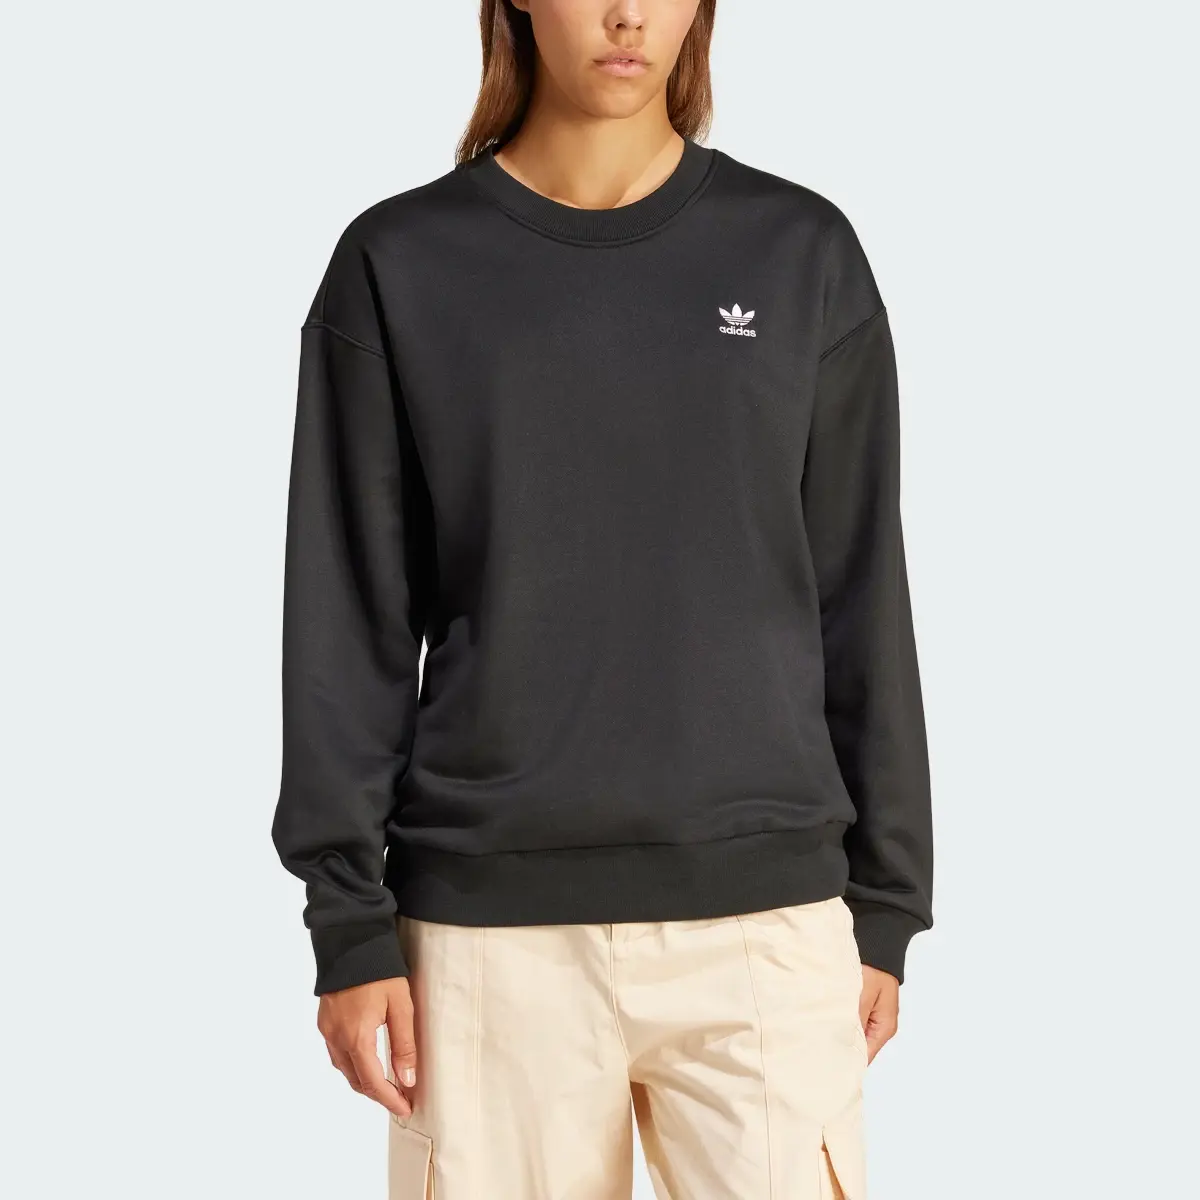 Adidas Trefoil Loose Sweatshirt. 1